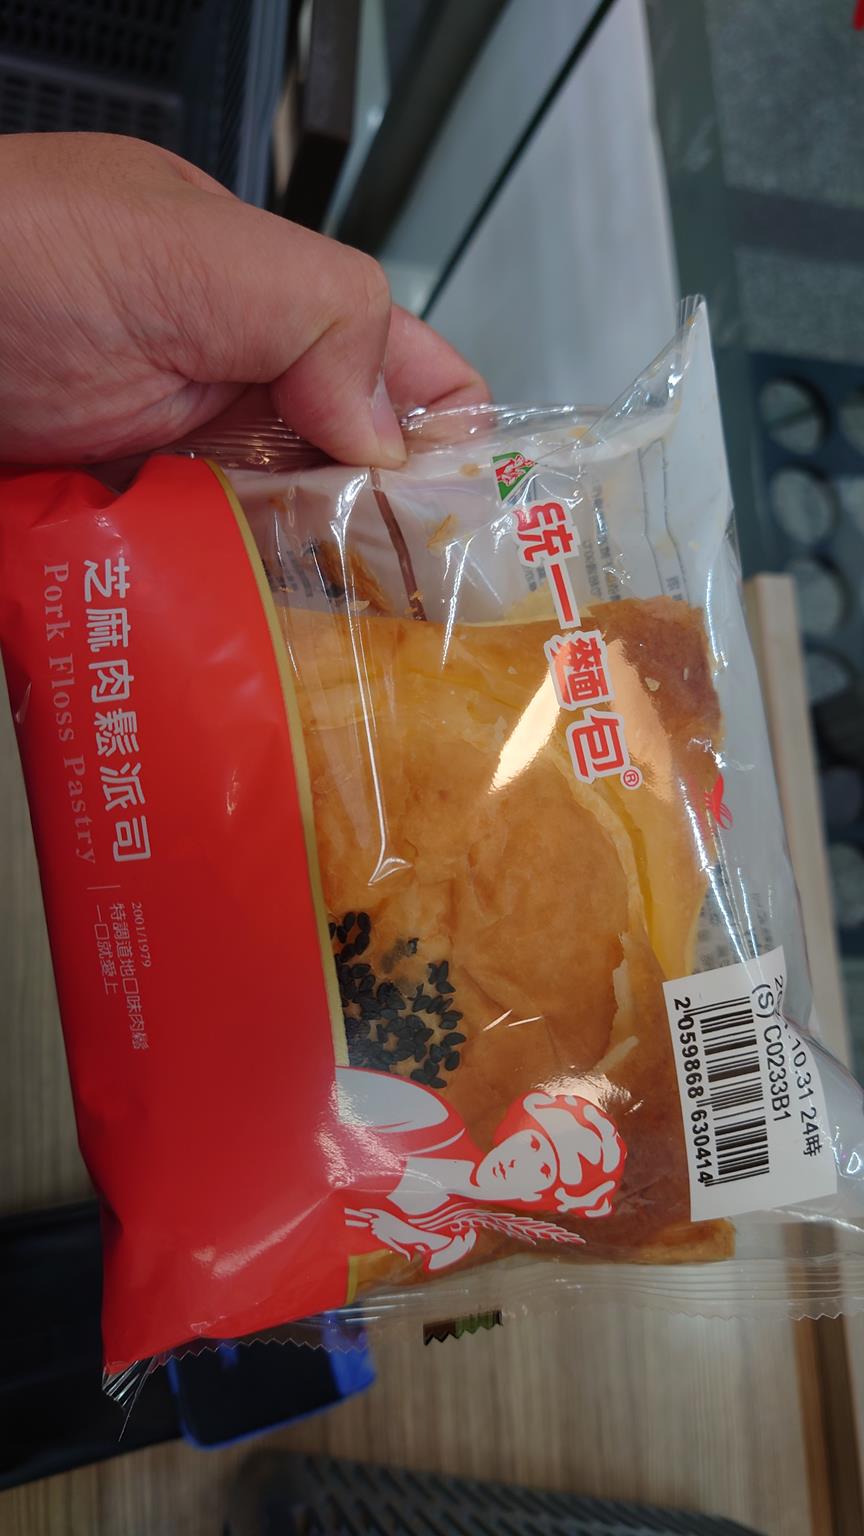 統一肉鬆麵包】7-11裡的肉鬆麵包-微波後的味道也挺不錯的- 台灣貪吃胖的玩樂故事